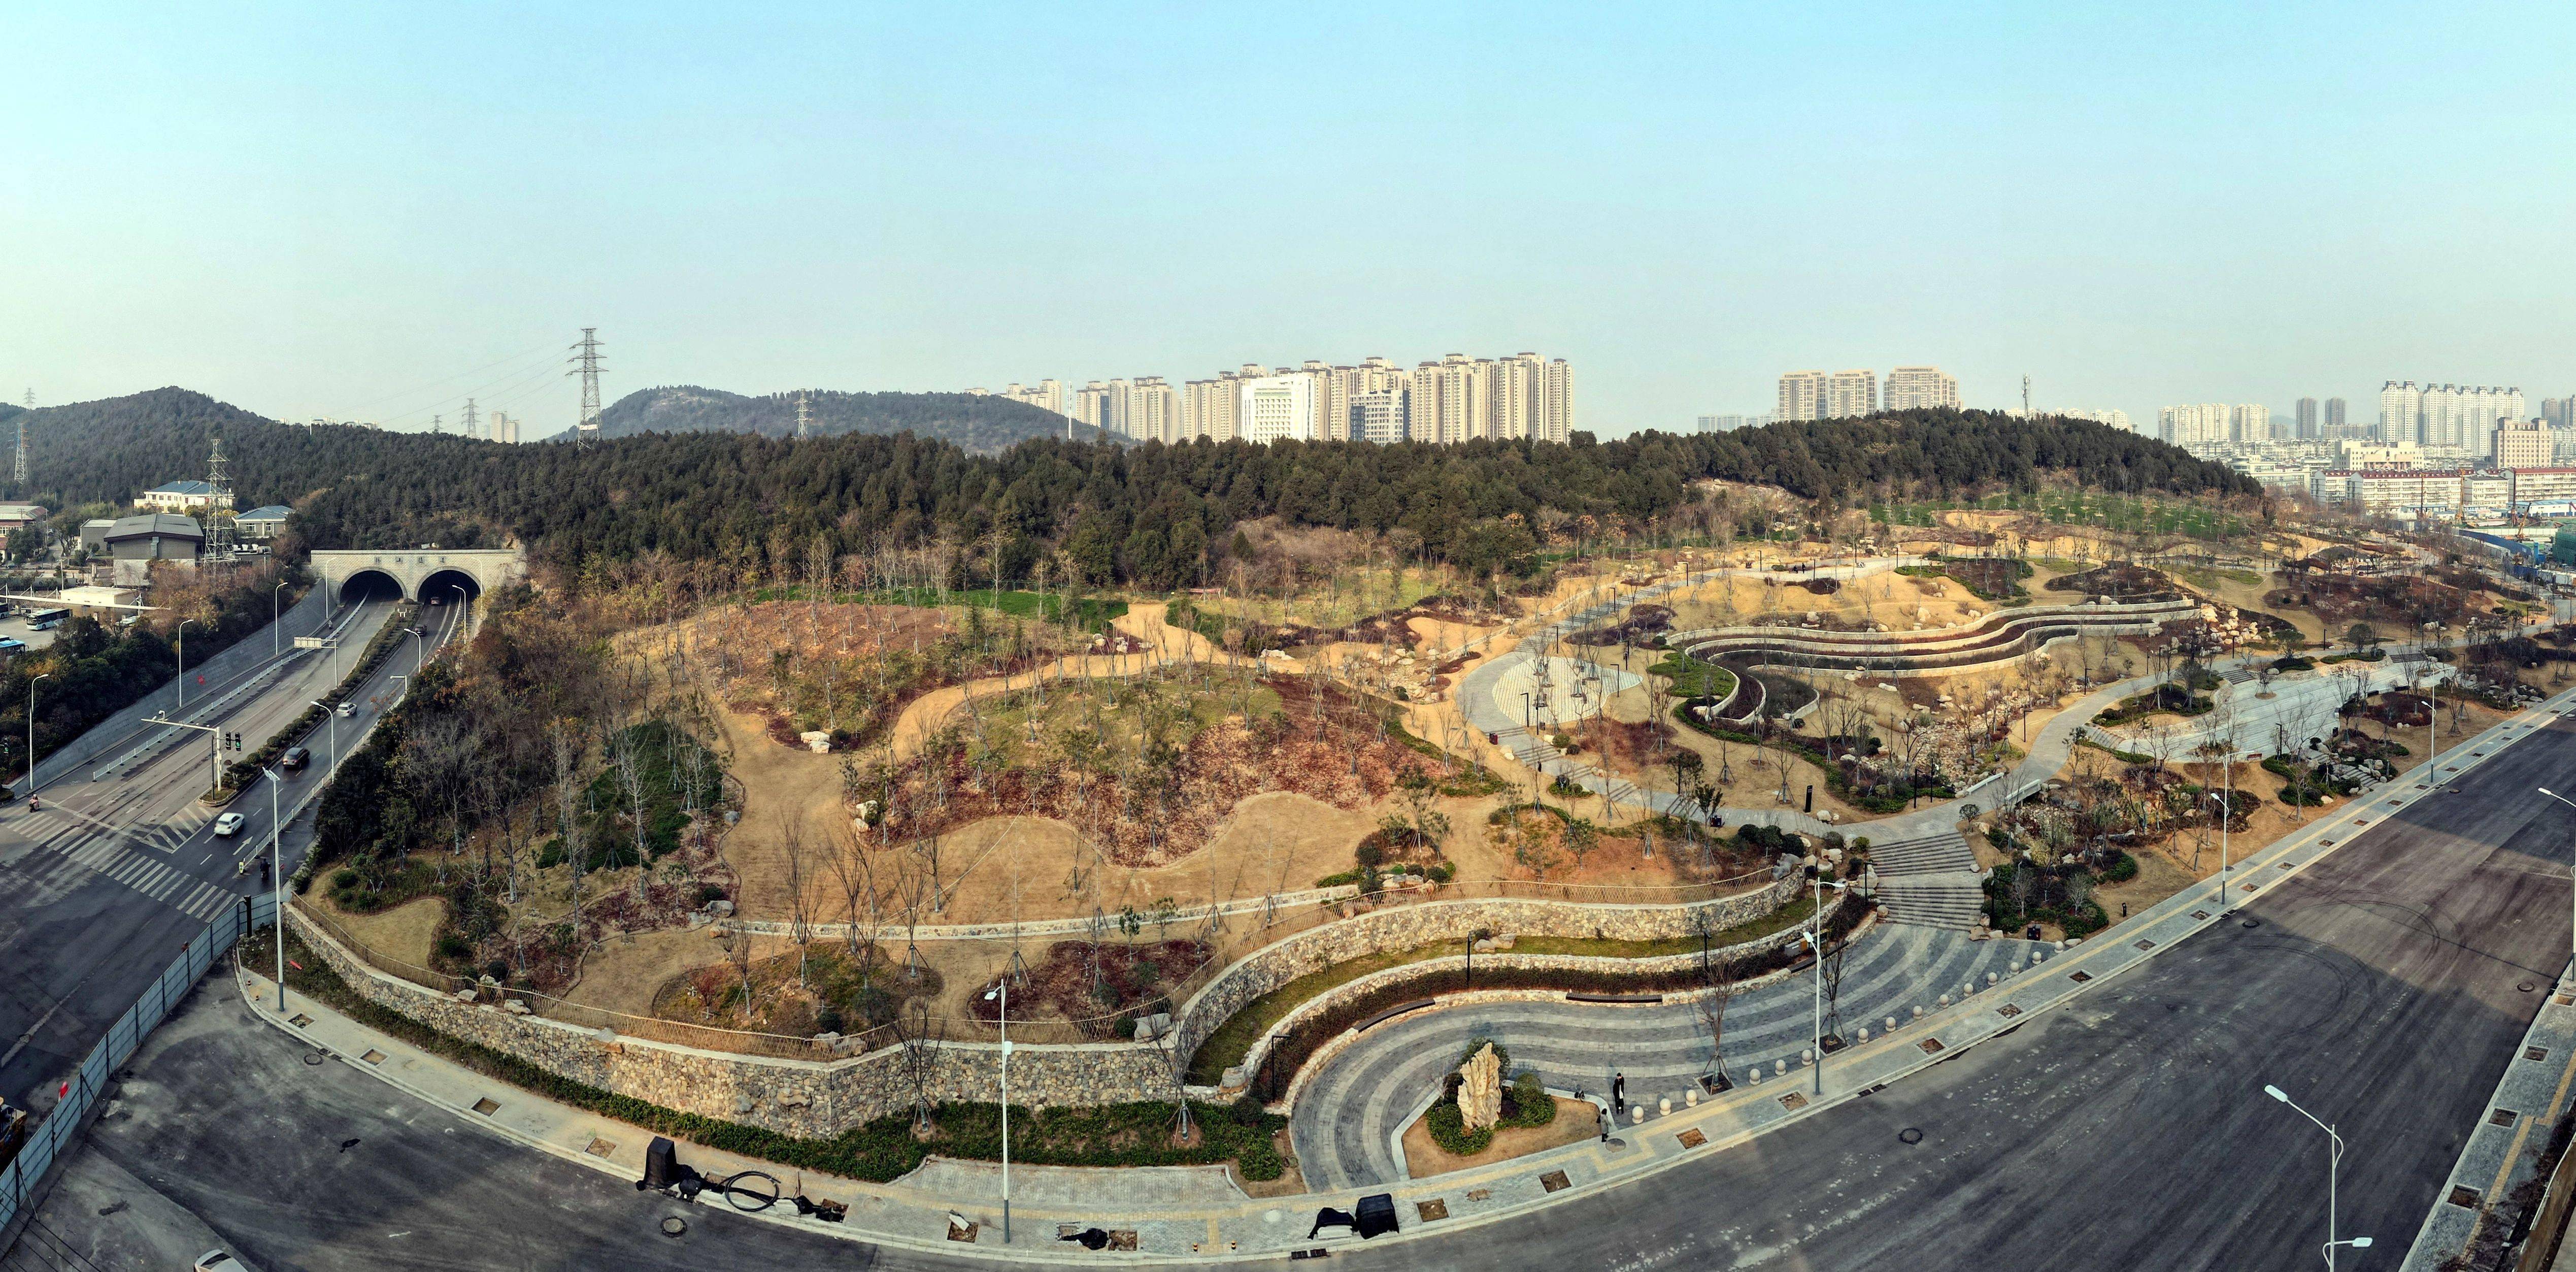 徐州韩山公园图片